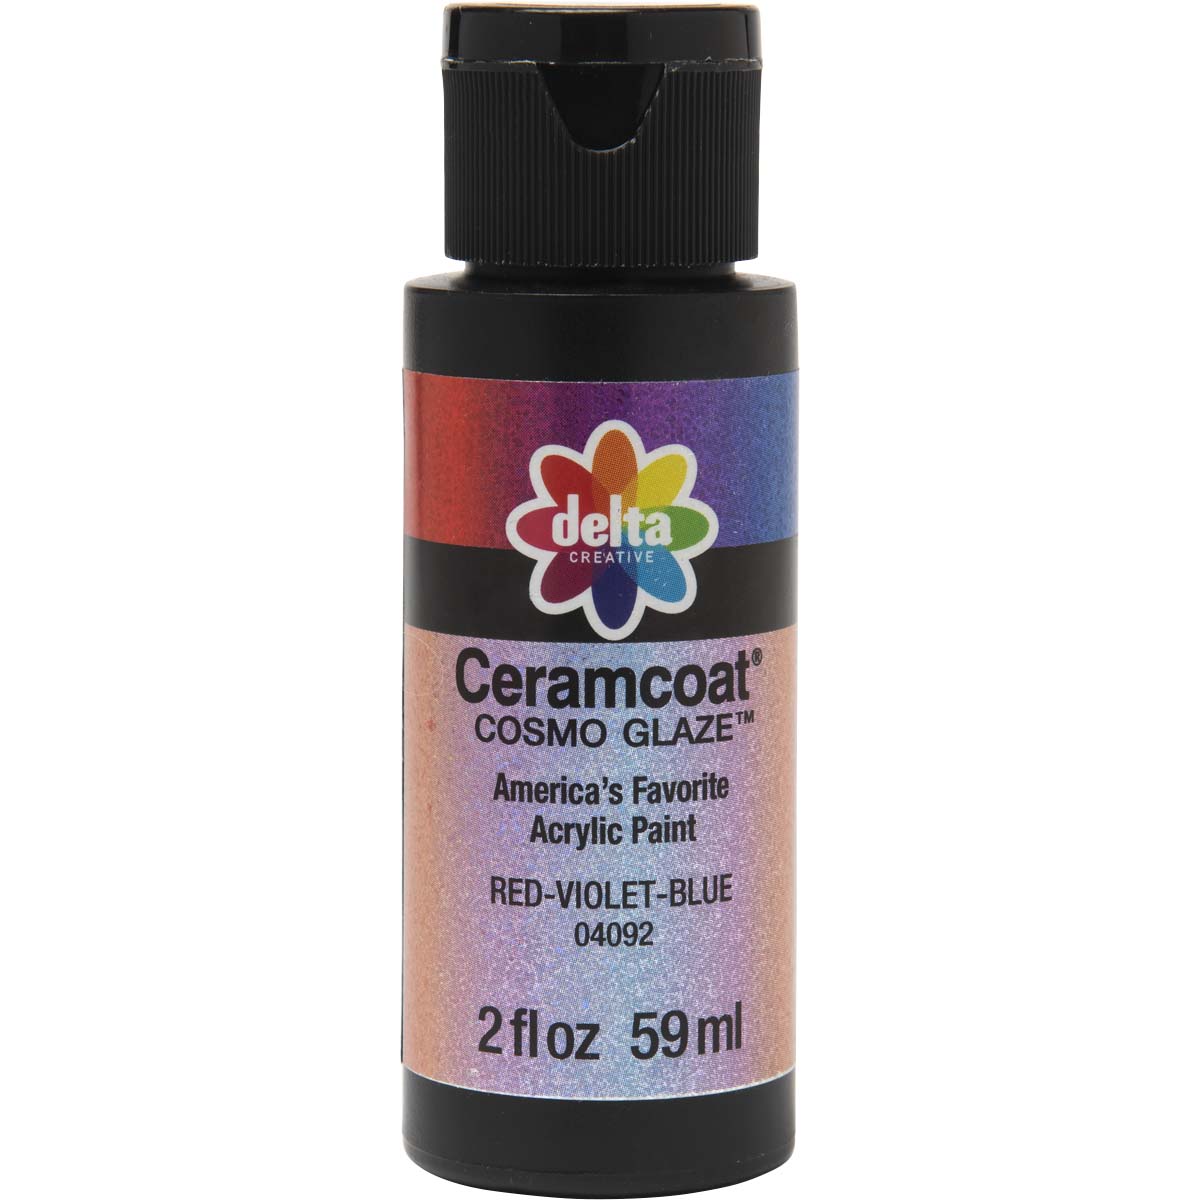 Delta Ceramcoat ® Cosmo Glaze™ - Red-Violet-Blue, 2 oz. - 04092